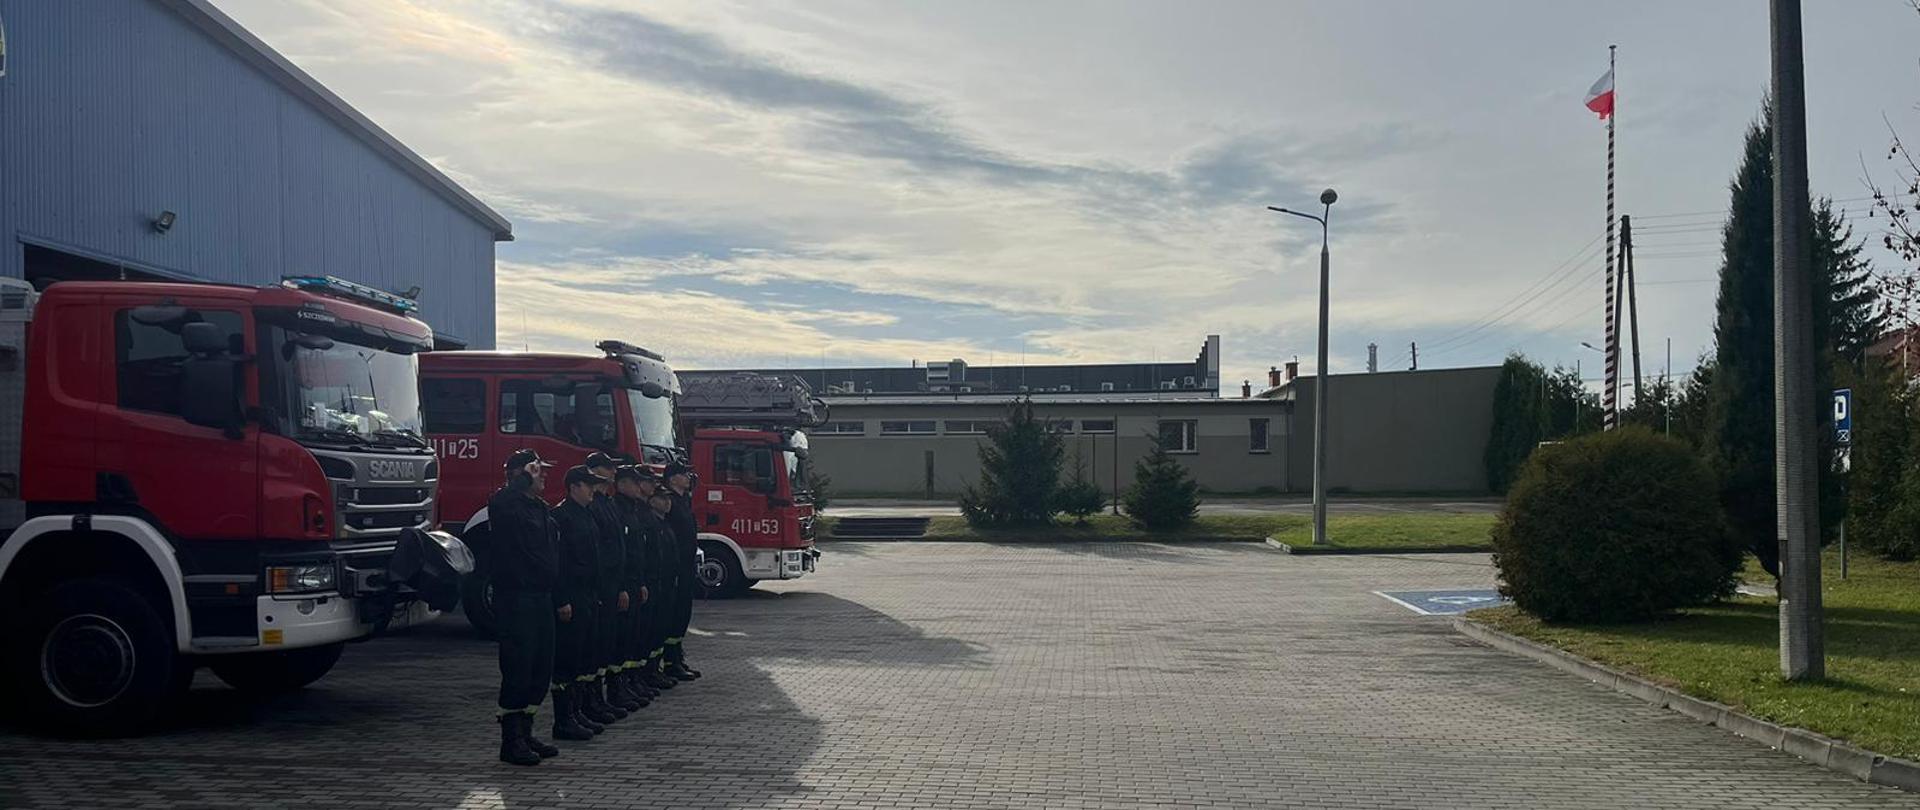 Zdjęcie obrazuje strażaków w umundurowaniu koszarowym. Strażacy znajdują się na tle samochodów ratowniczo-gaśniczych. Po prawej stronie widać maszt, na którym zawieszona jest biało-czerwona flaga.